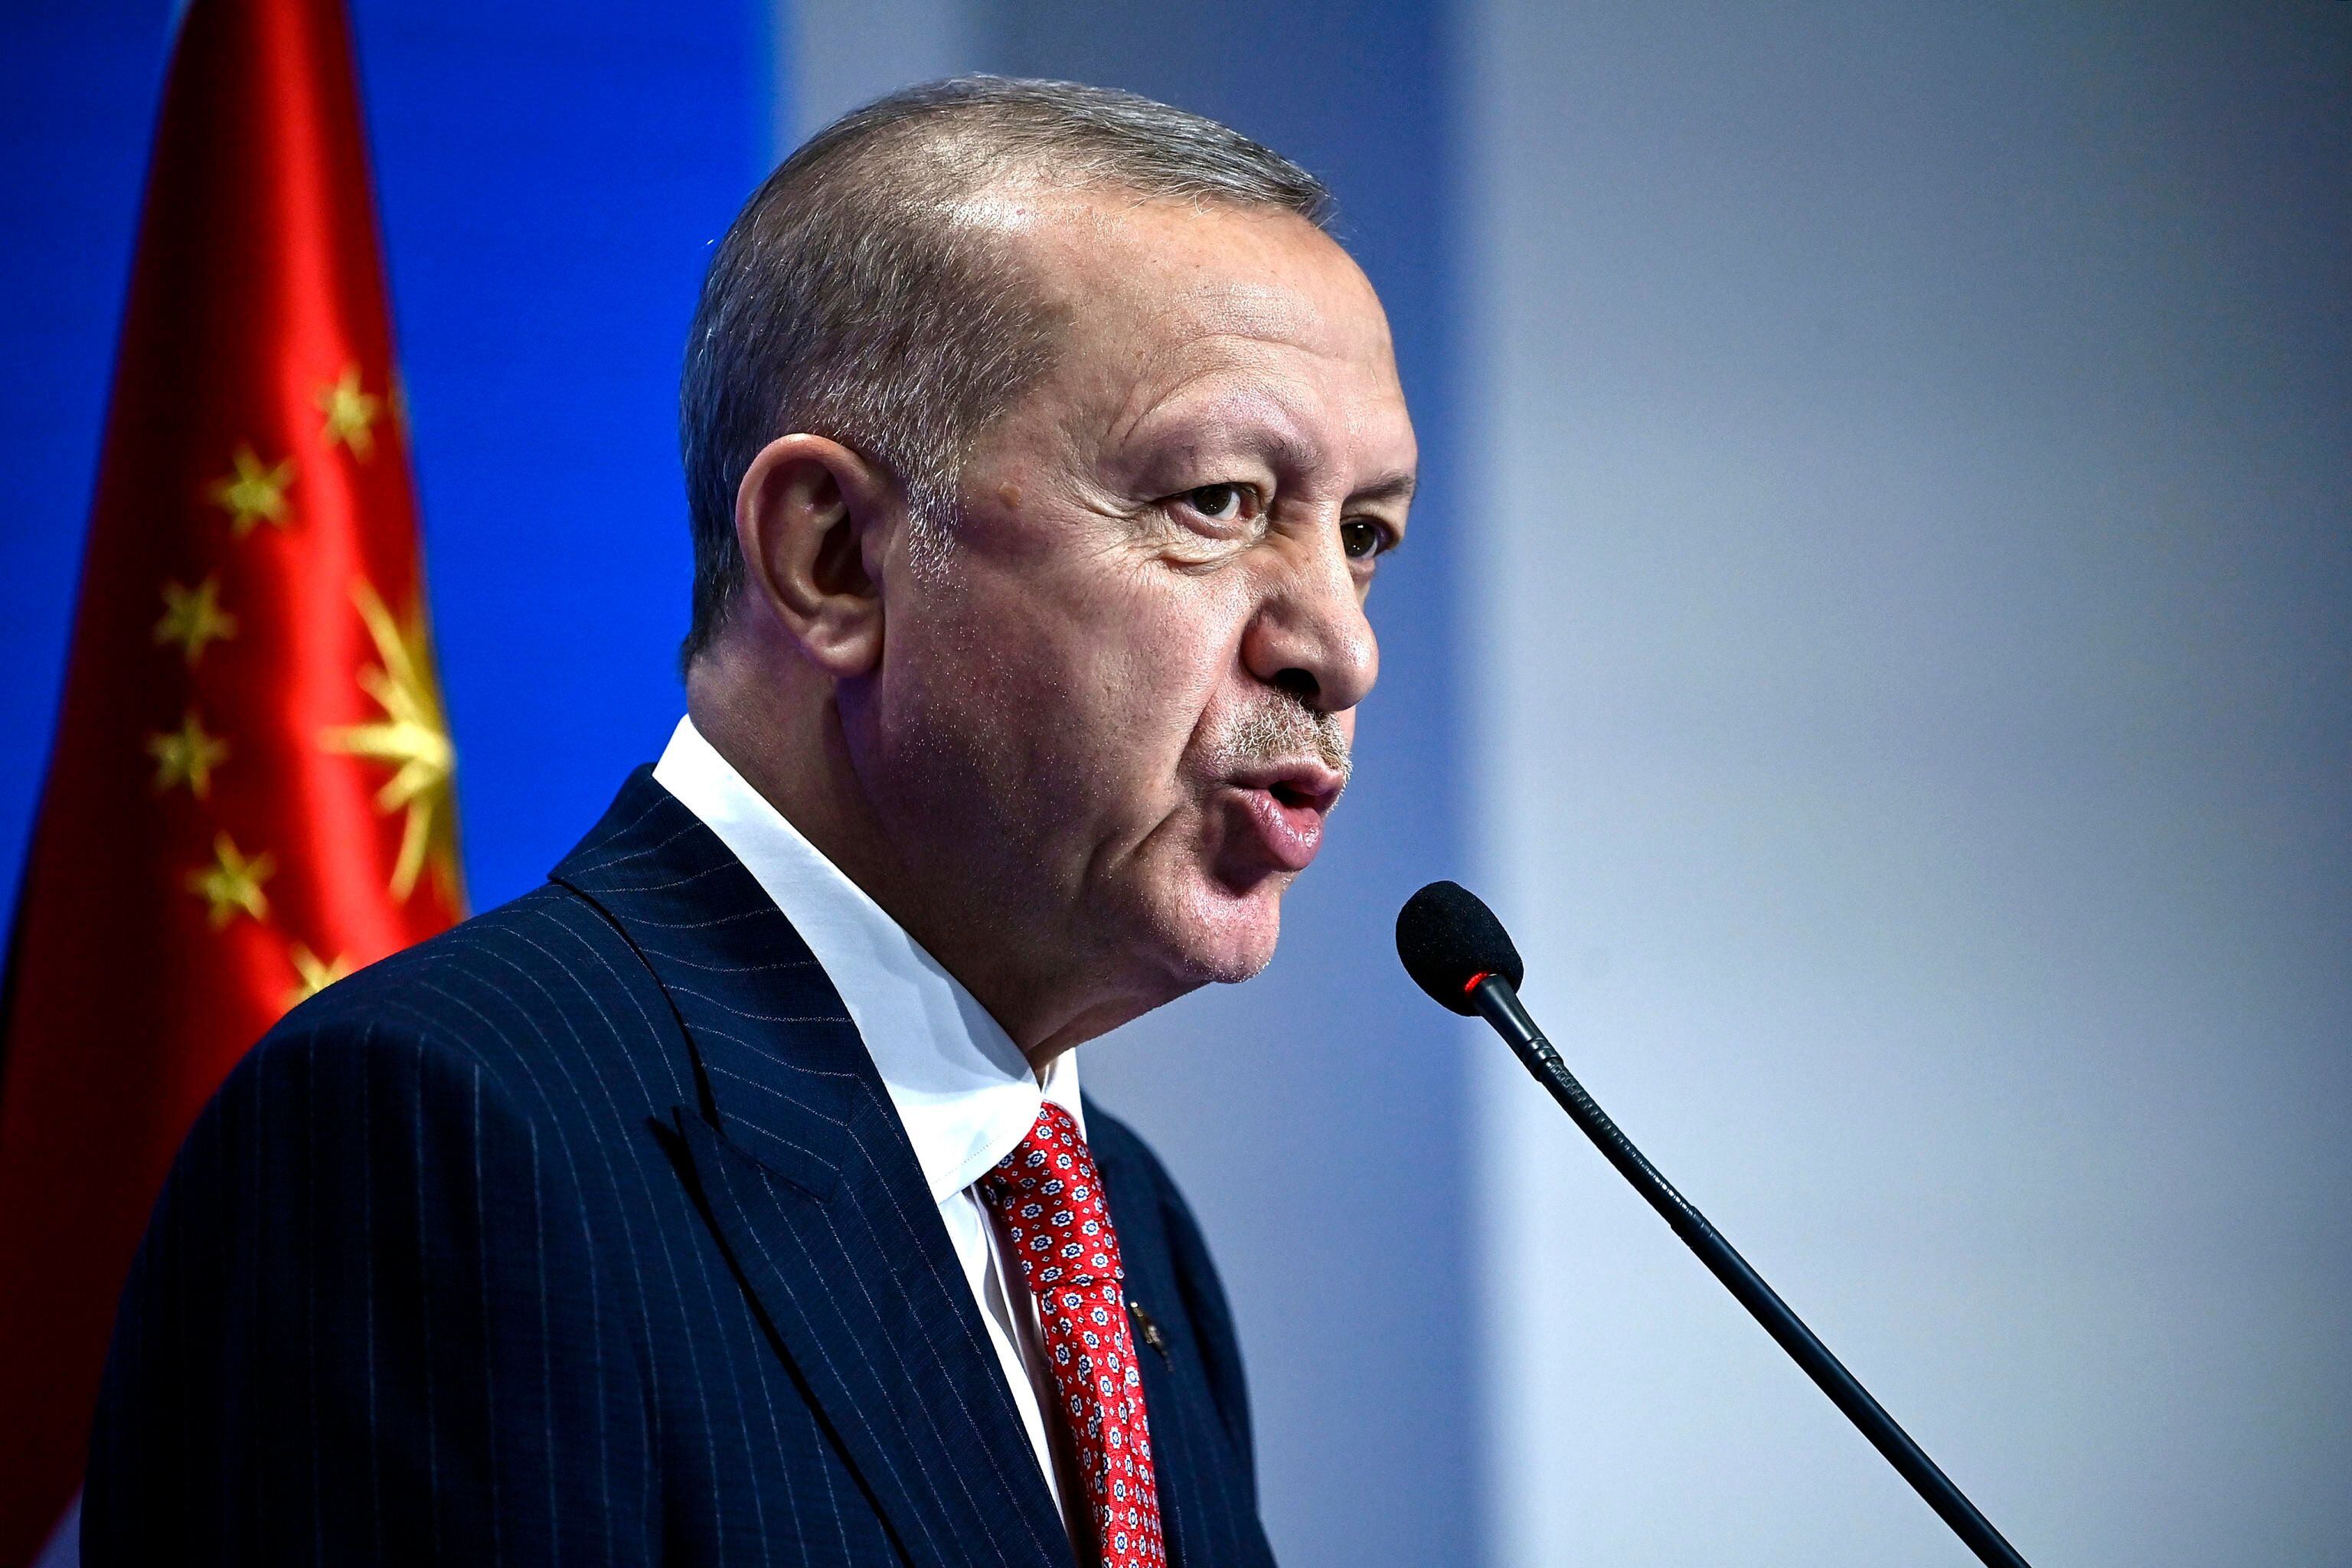 El presidente de Turquía, Recep Tayyip Erdogan. EFE/EPA/RICCARDO ANTIMIANI/Archivo
